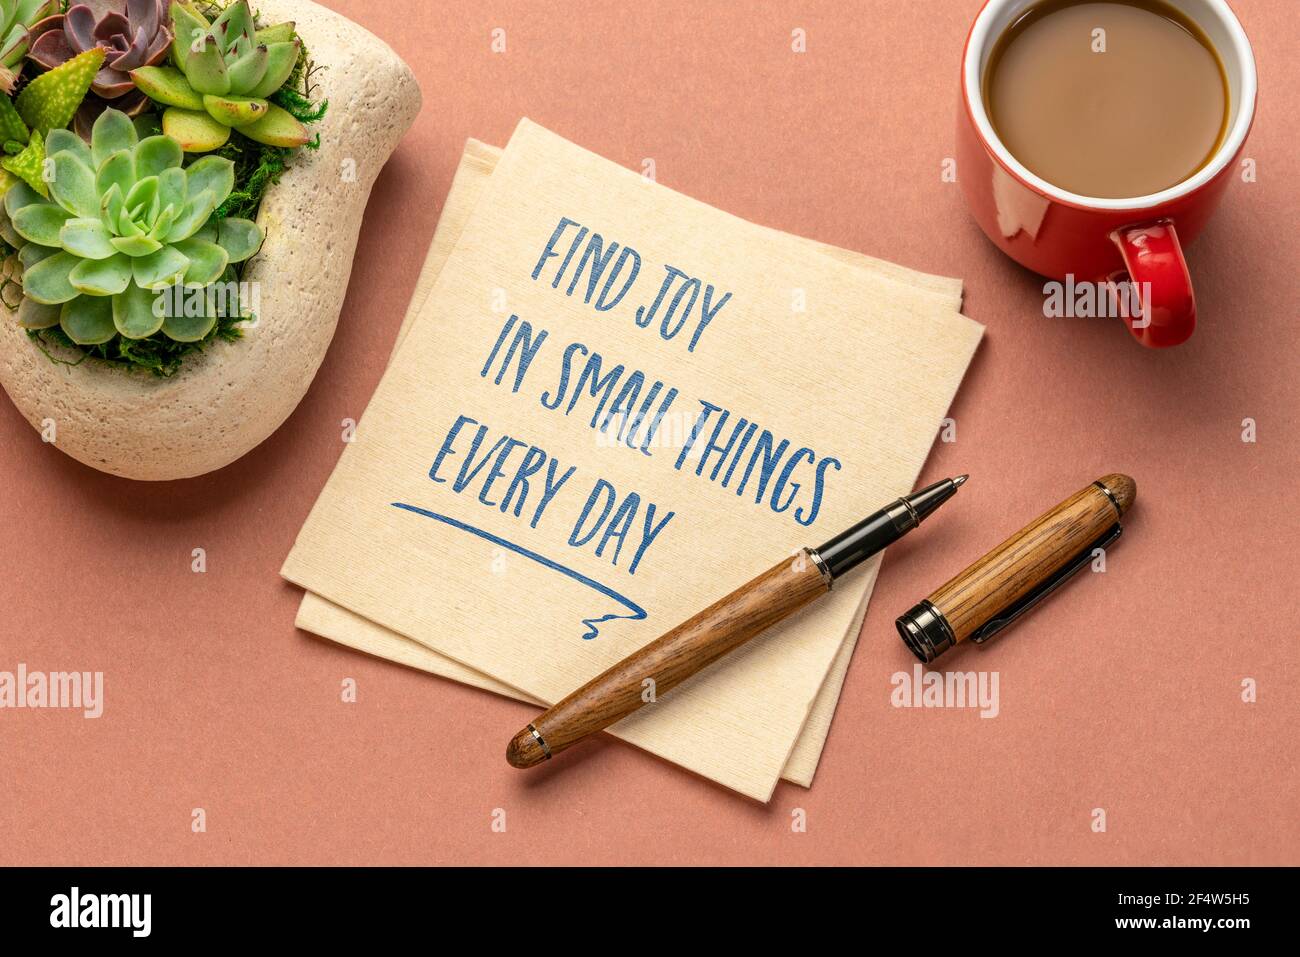 encuentre alegría en pequeñas cosas cada día - escritura inspiradora en una servilleta con una taza de café, positividad, mentalidad y concepto de desarrollo personal Foto de stock